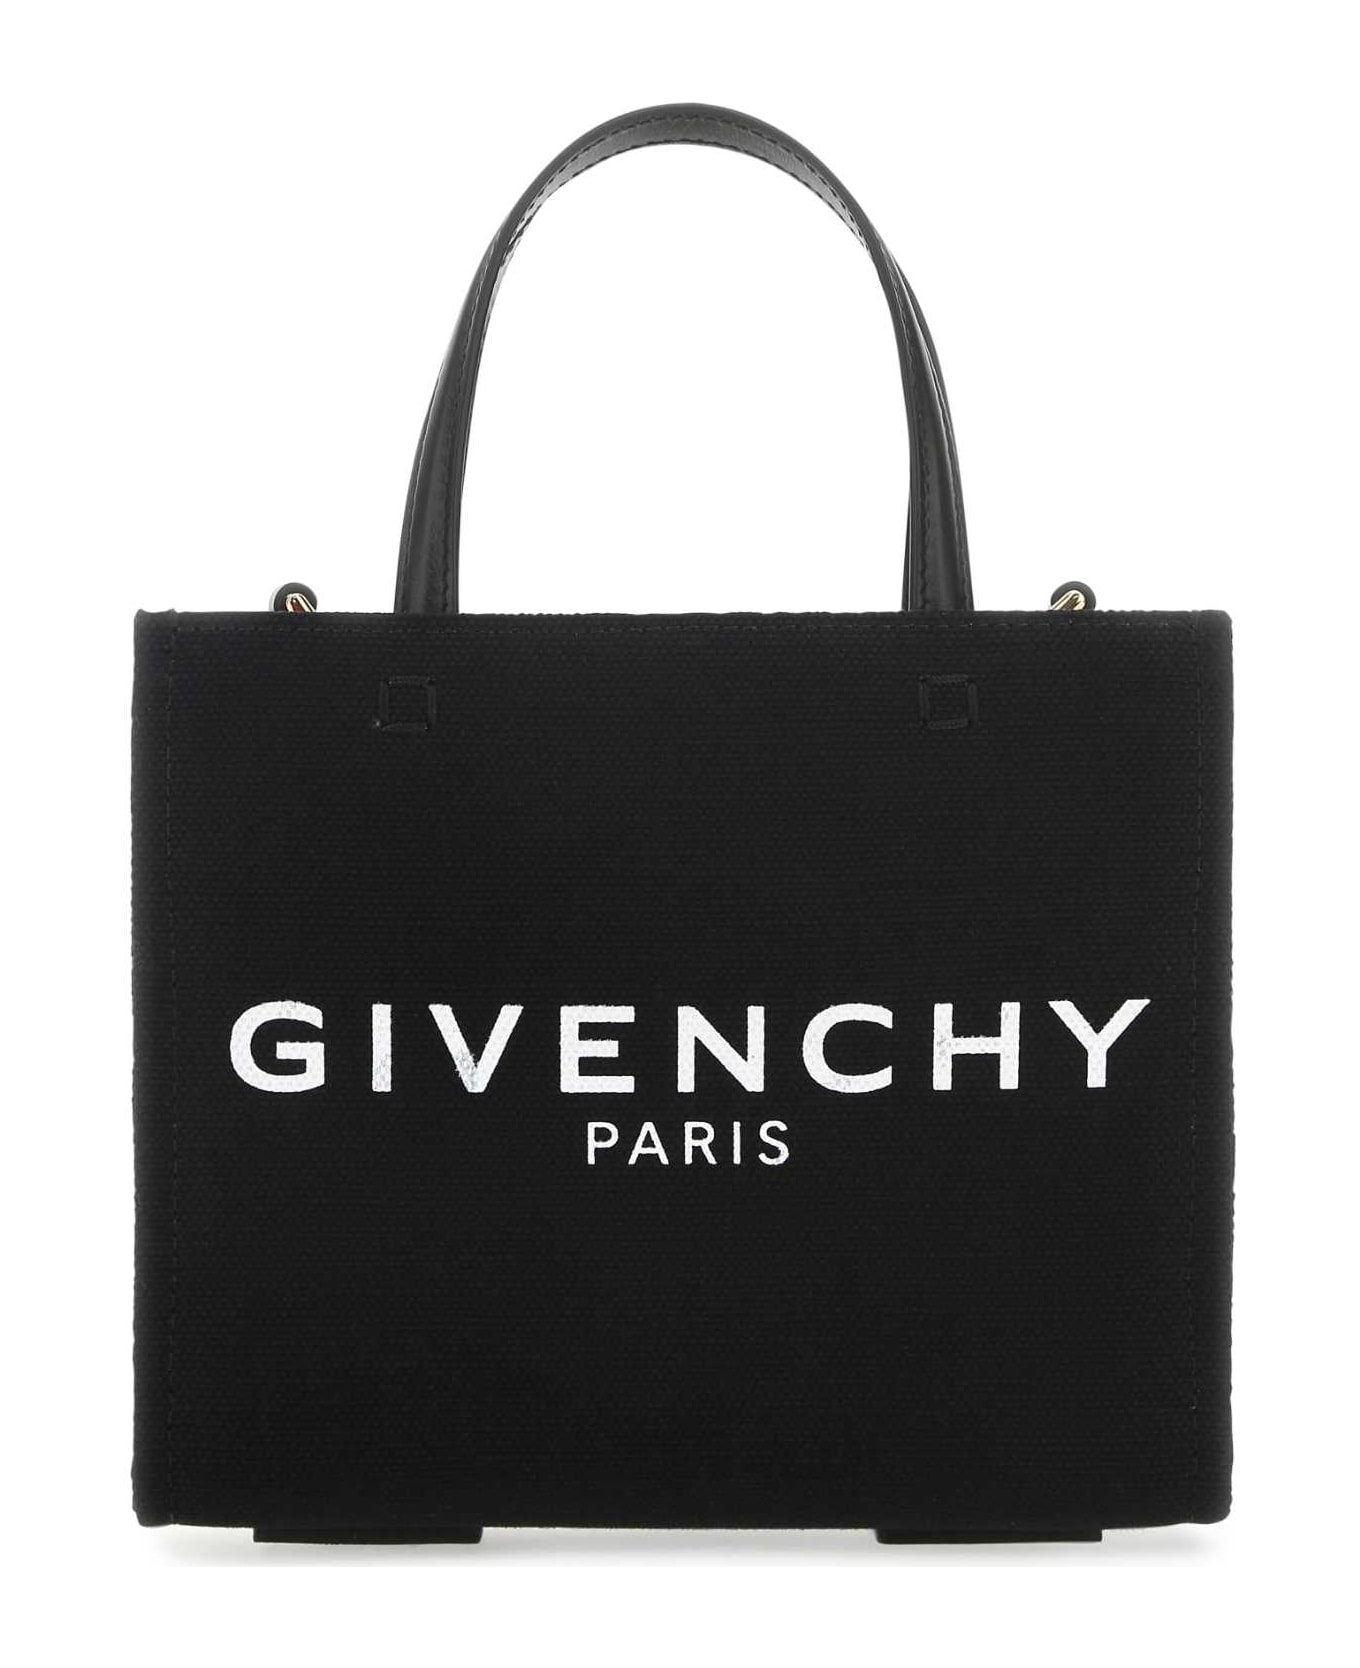 Givenchy Black Canvas G-tote Handbag - 001